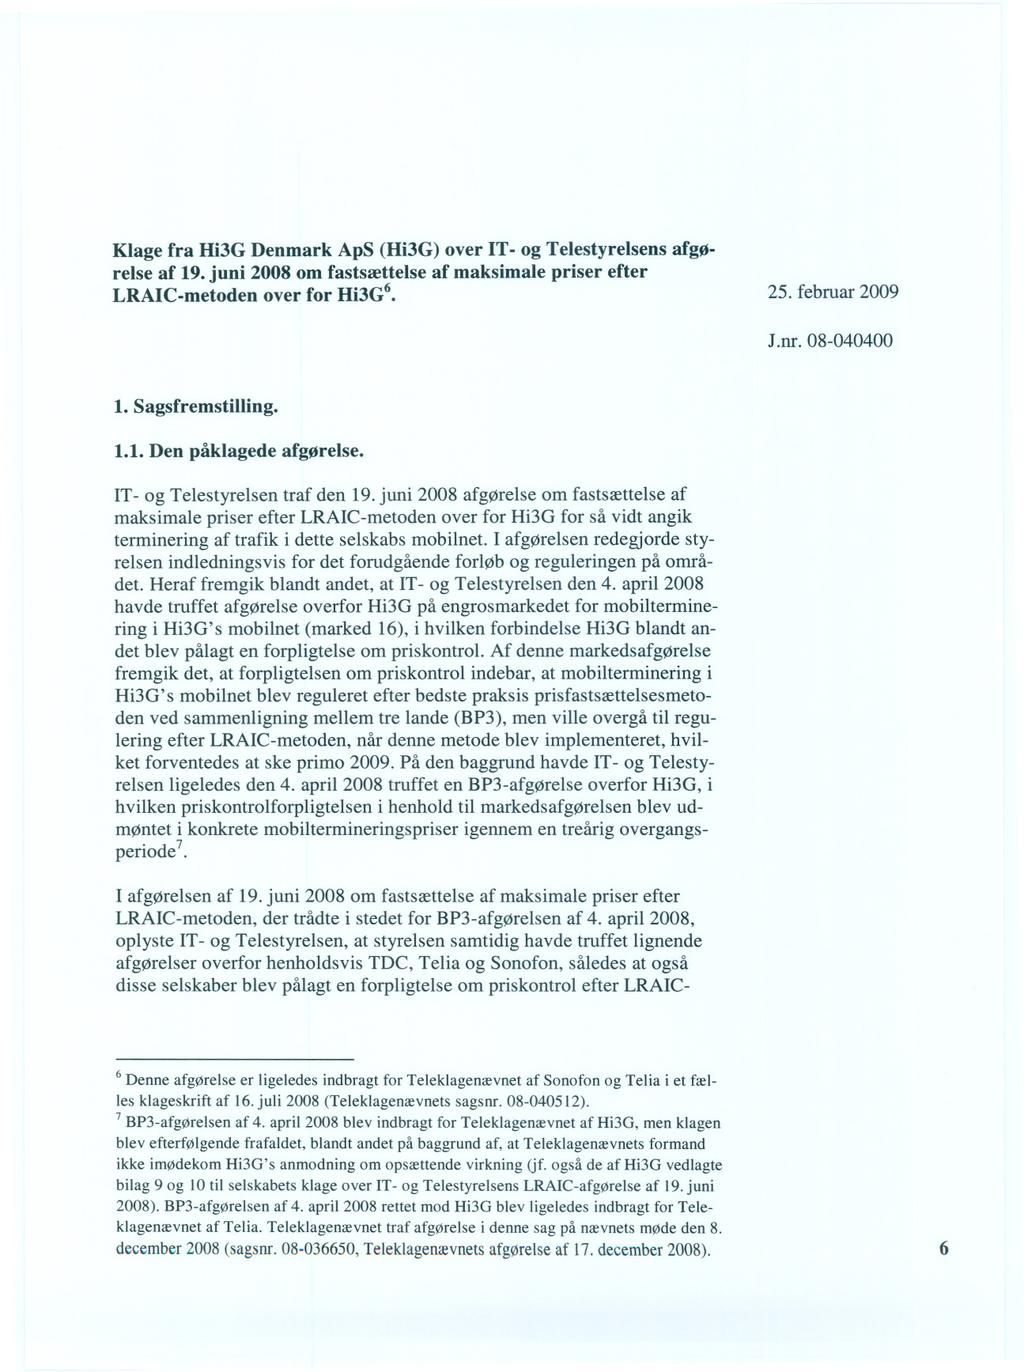 Klage fra Hi3G Denmark ApS (Hi3G) over IT- og Telestyrelsens afgørelse af 19. juni 2008 om fastsættelse af maksimale priser efter LRAIC-metoden over for Hi3G6 25. februar 2009 J.nr. 08-040400 1.